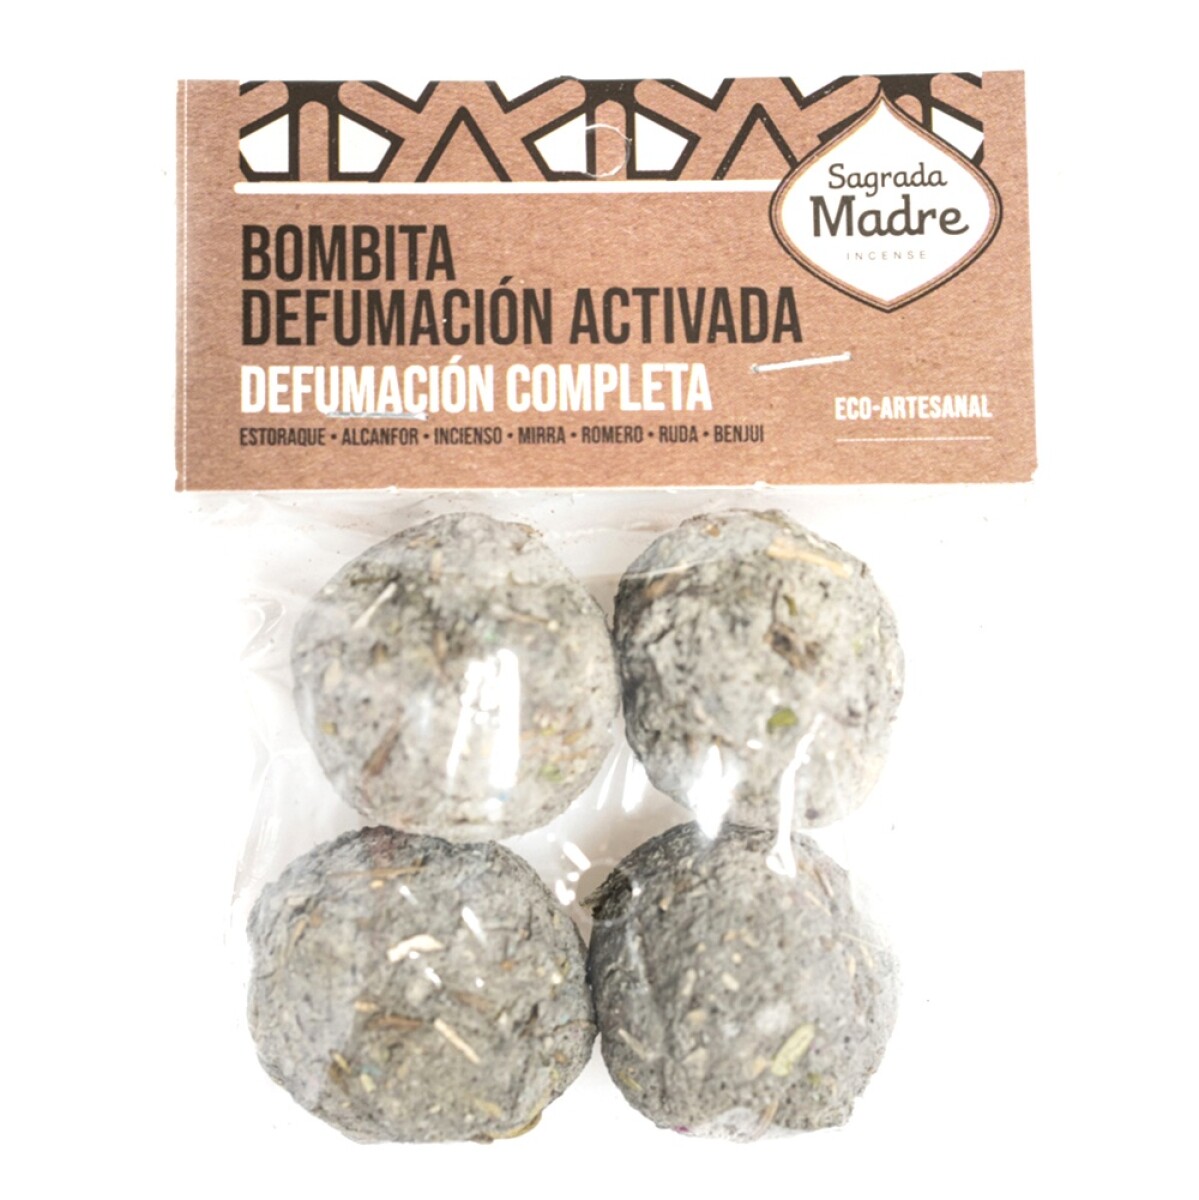 BOMBITAS EN BOLSITA SAGRADA MADRE X4 - Defumación Completa 